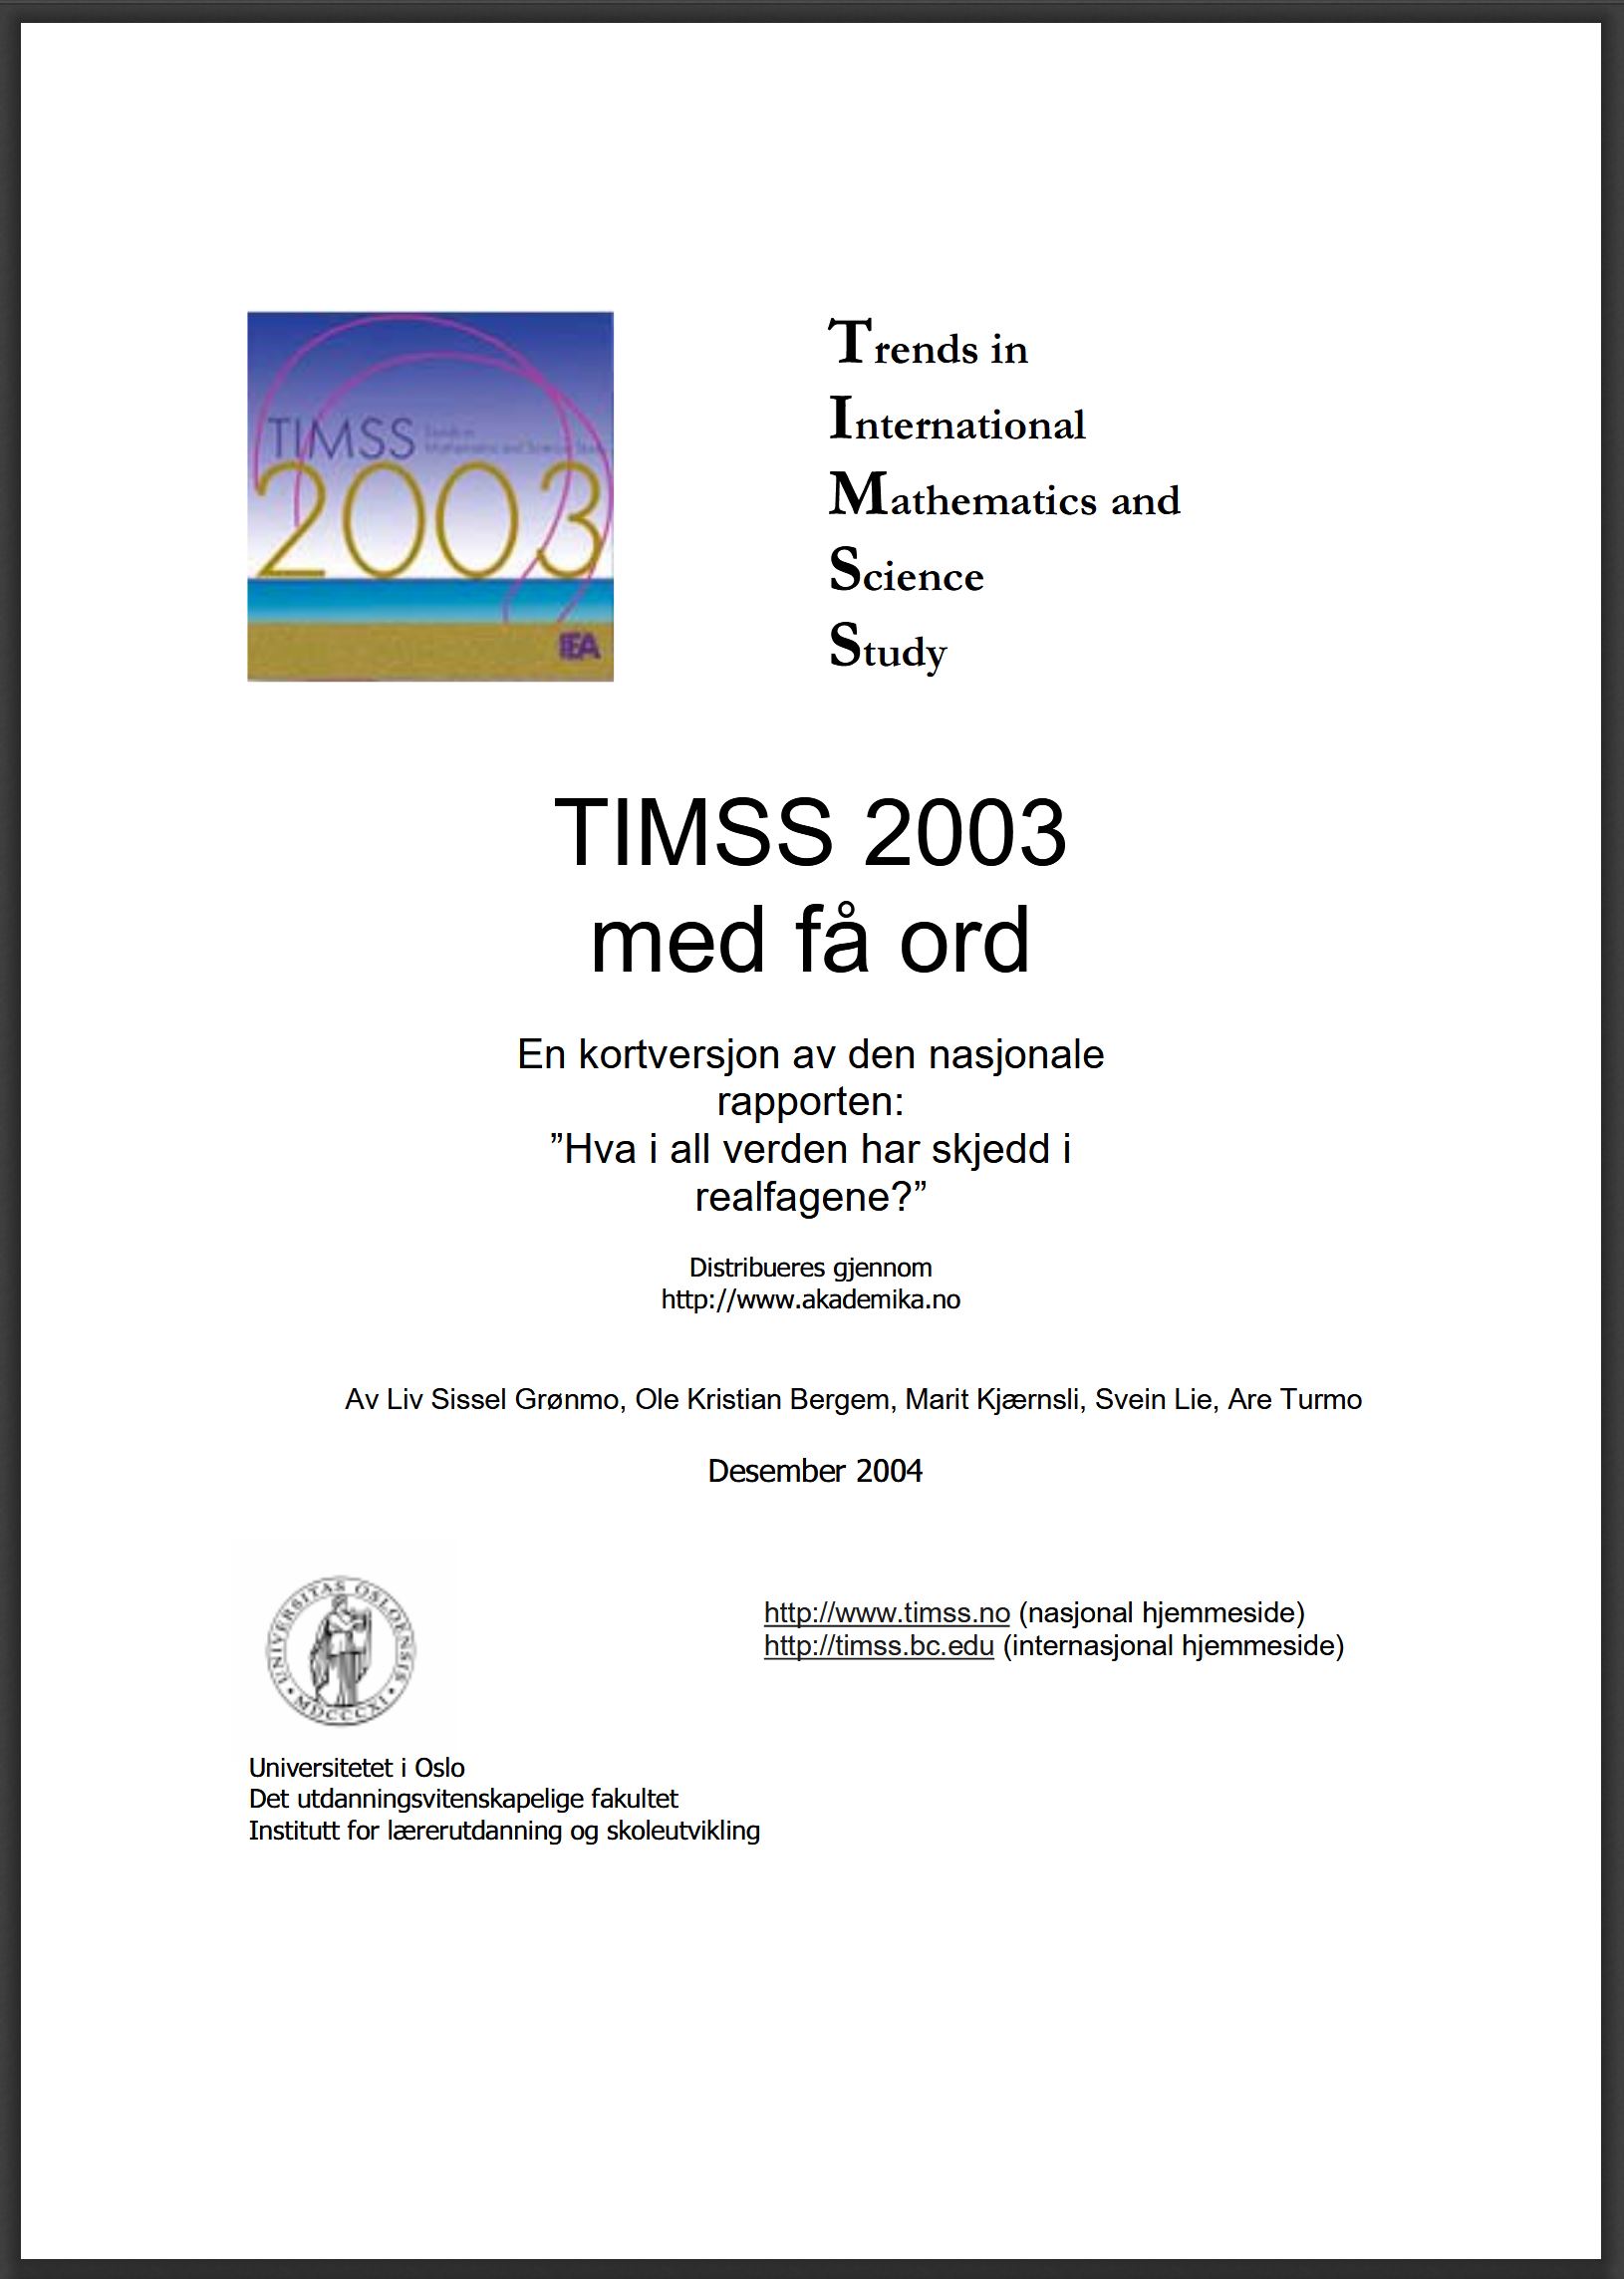 Forside for kortrapporten fra TIMSS 2003 (distribuert gjennom Akademika.no)